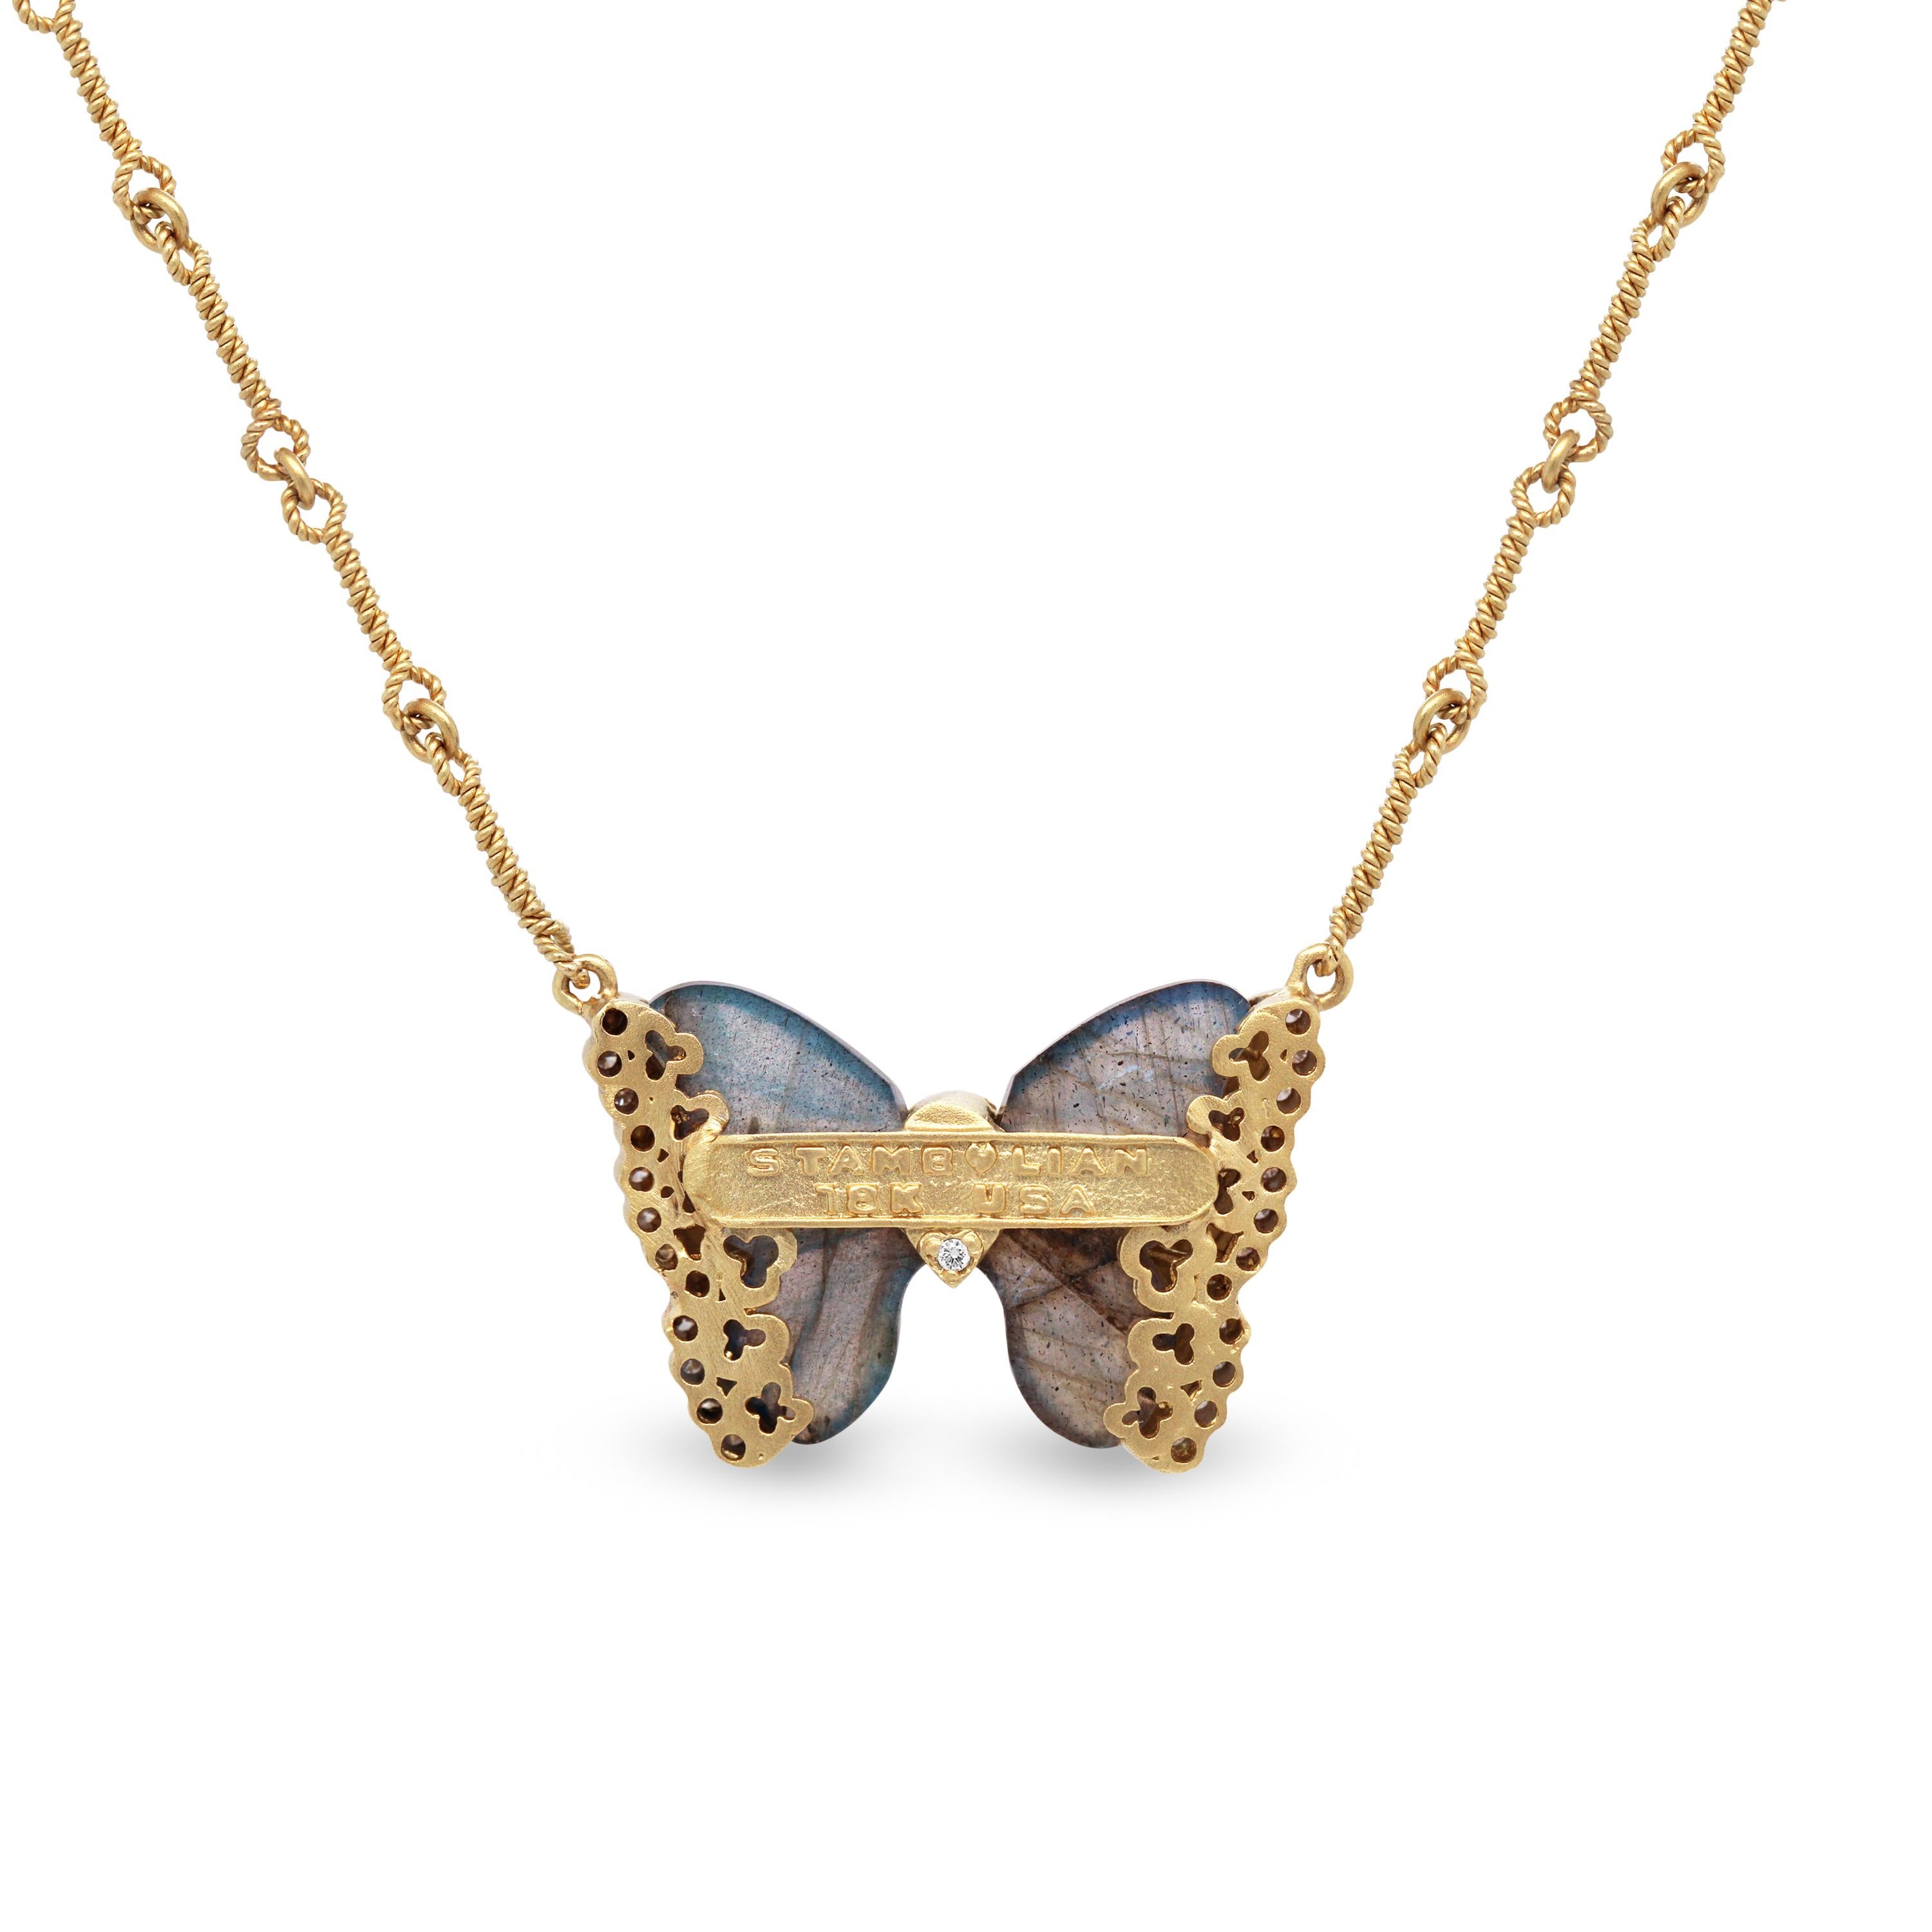 Stambolian 18K Gelbgold Diamant Schwarz Emaille Schmetterling Anhänger Halskette

Dieser Schmetterling stammt aus der 2020 Spring Stambolian Kollektion und zeigt zwei Labradorite im Spezialschliff, die mit schwarzer Emaille und Diamanten umrahmt